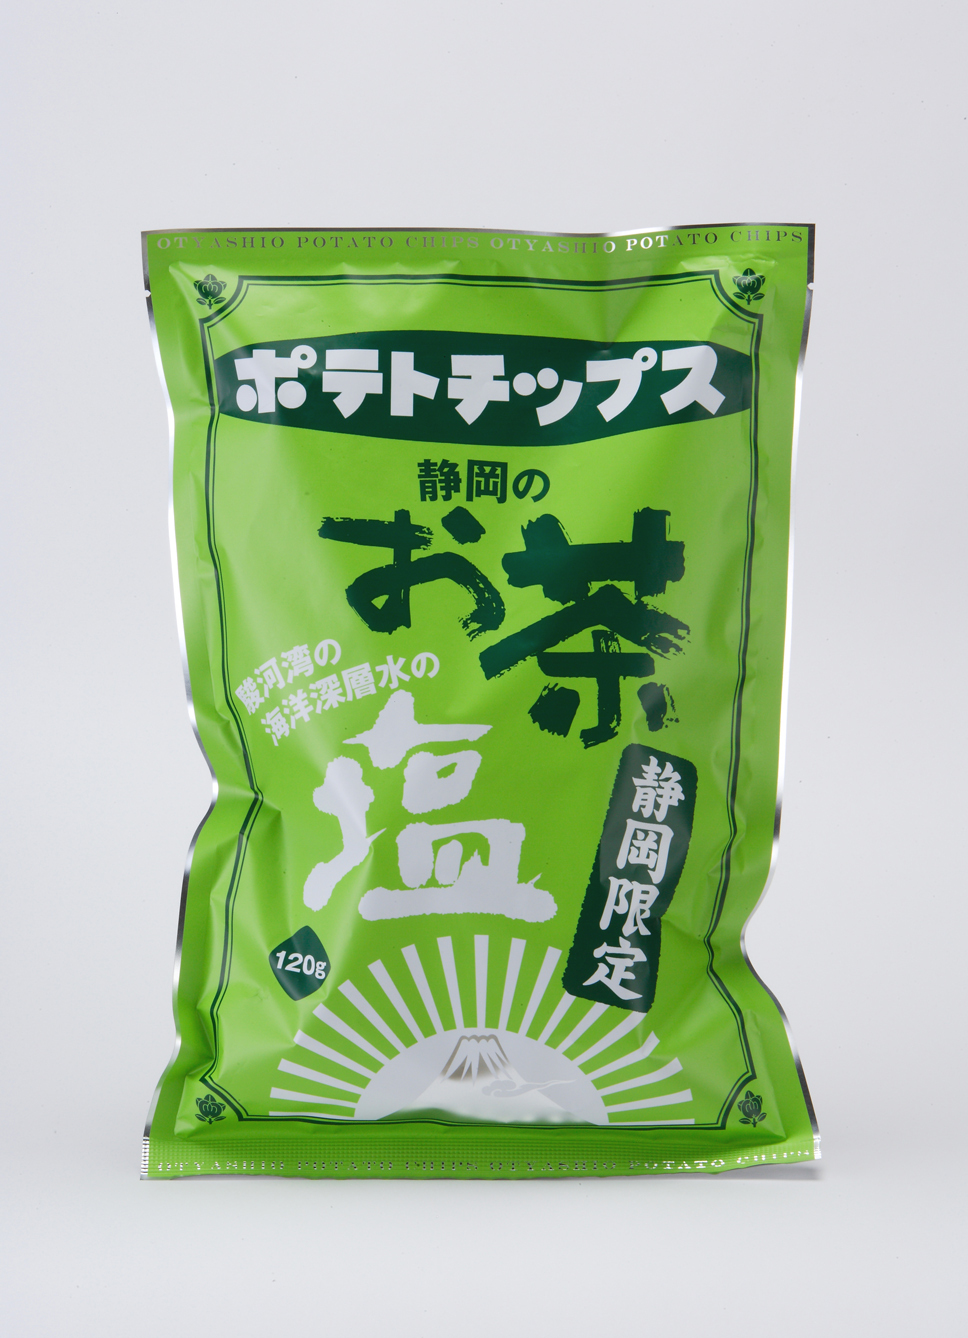 お茶塩ポテトチップス.jpg